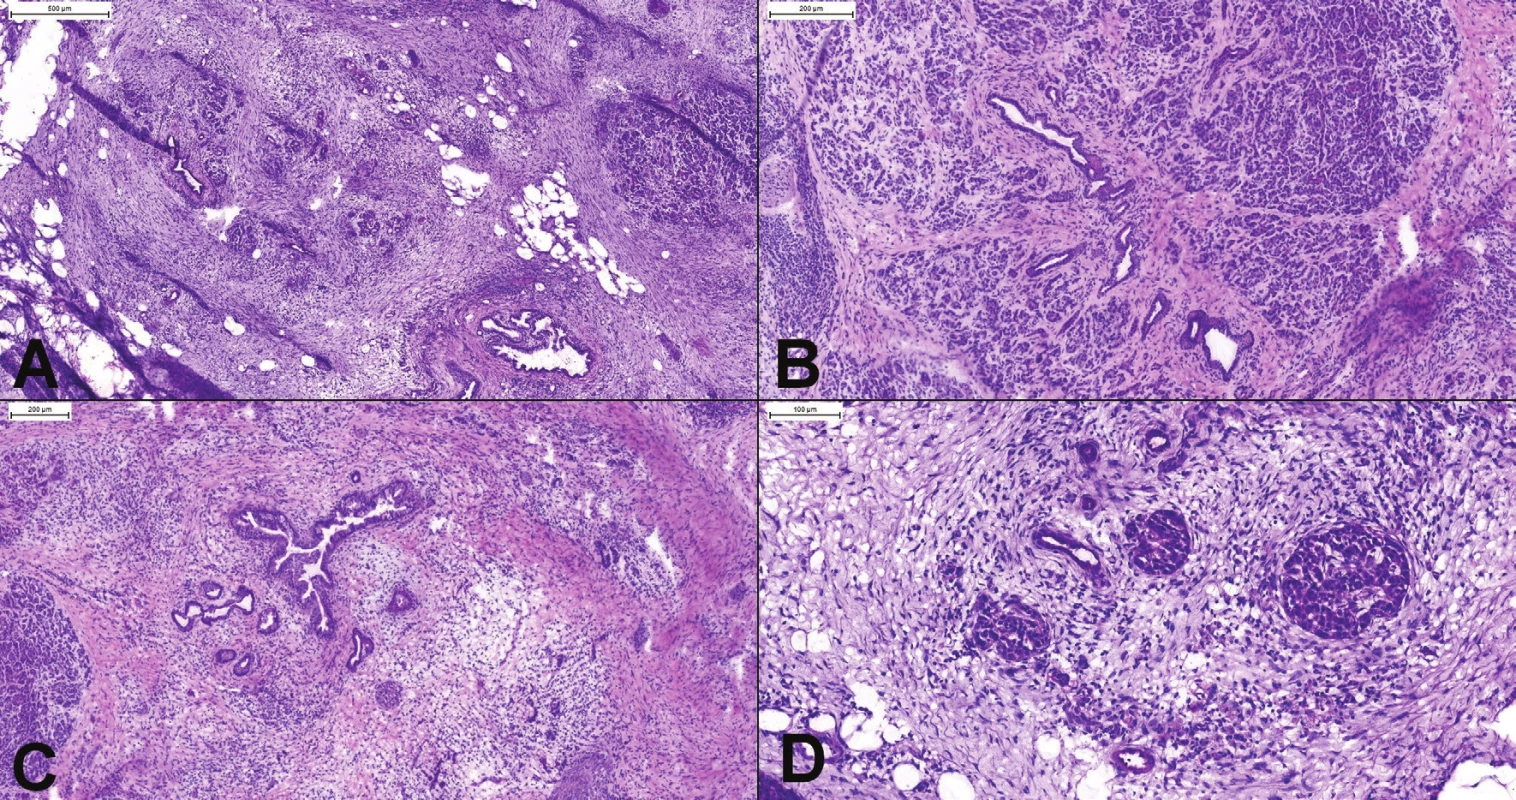 (A) Chronická pankreatitída. Aj v oblastiach ťažkej atrofie (vľavo hore) je stále viditeľné organoidné lobulárne usporiadanie.
(B) Oblasť s miernou až stredne výzaznou atrofiou a fibrózou. Je prítomná proliferácia duktov, ktoré sú však lokalizované
v centre pankreatického acinu. (C) Ťažká atrofia (acinárne štruktúry úplne chýbajú) s proliferáciou duktov s hyperplastickým
epitelom. Lobulárne usporiadanie je známkou pankreatitídy, nejedná sa o karcinóm. (D) Psudohyperplastické Langerhansove
ostrovčeky a proliferujúce dukty s reaktívnymi atypiami môžu imitovať karcinóm v dezmoplastickej stróme.